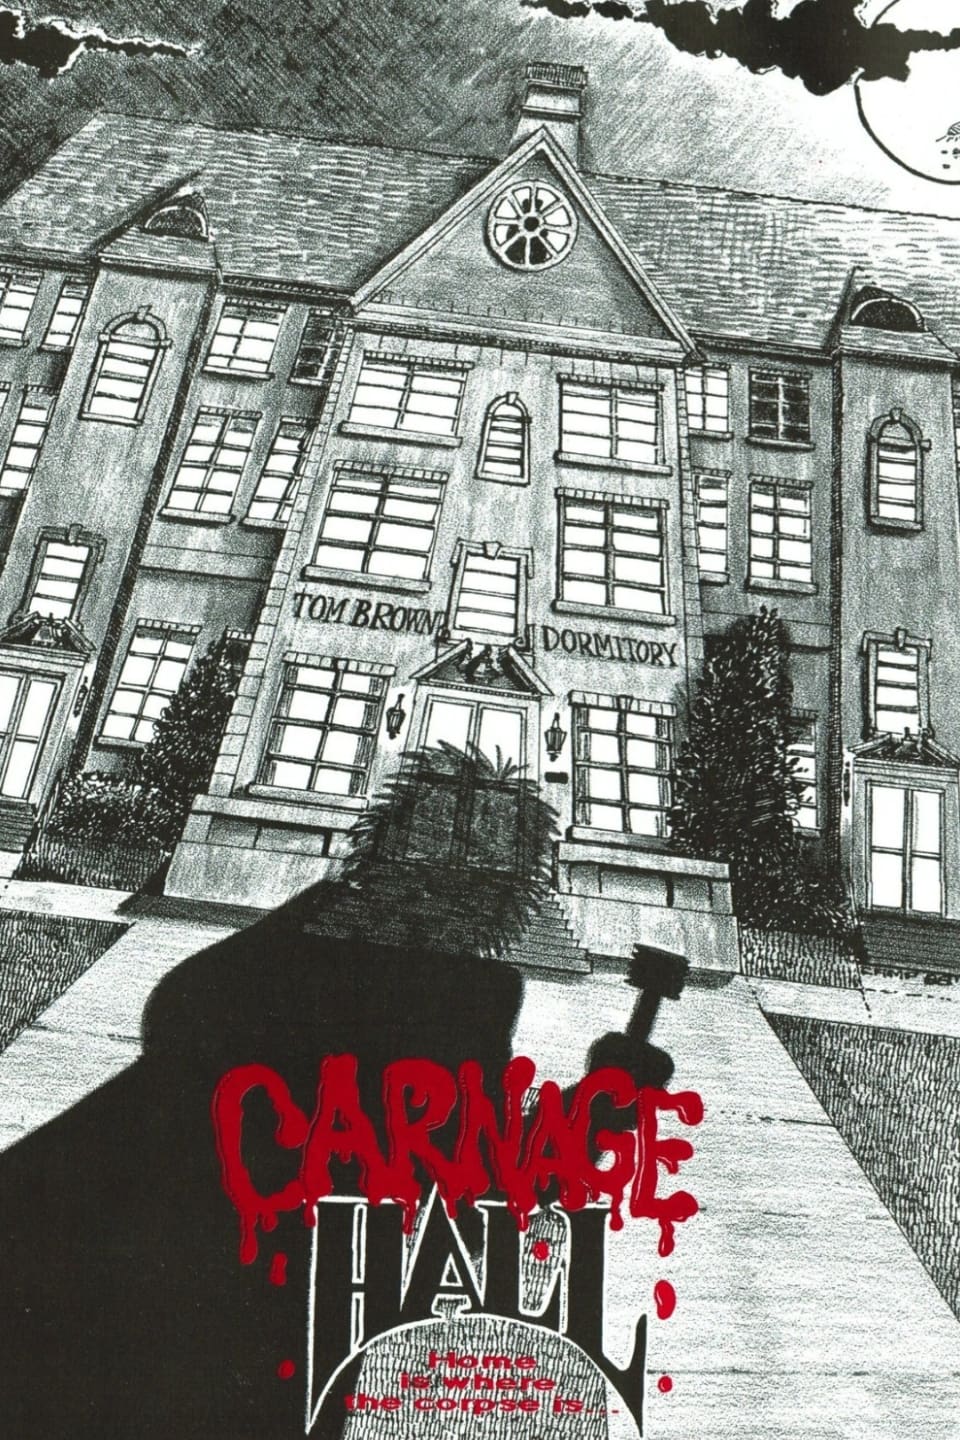 Carnage Hall